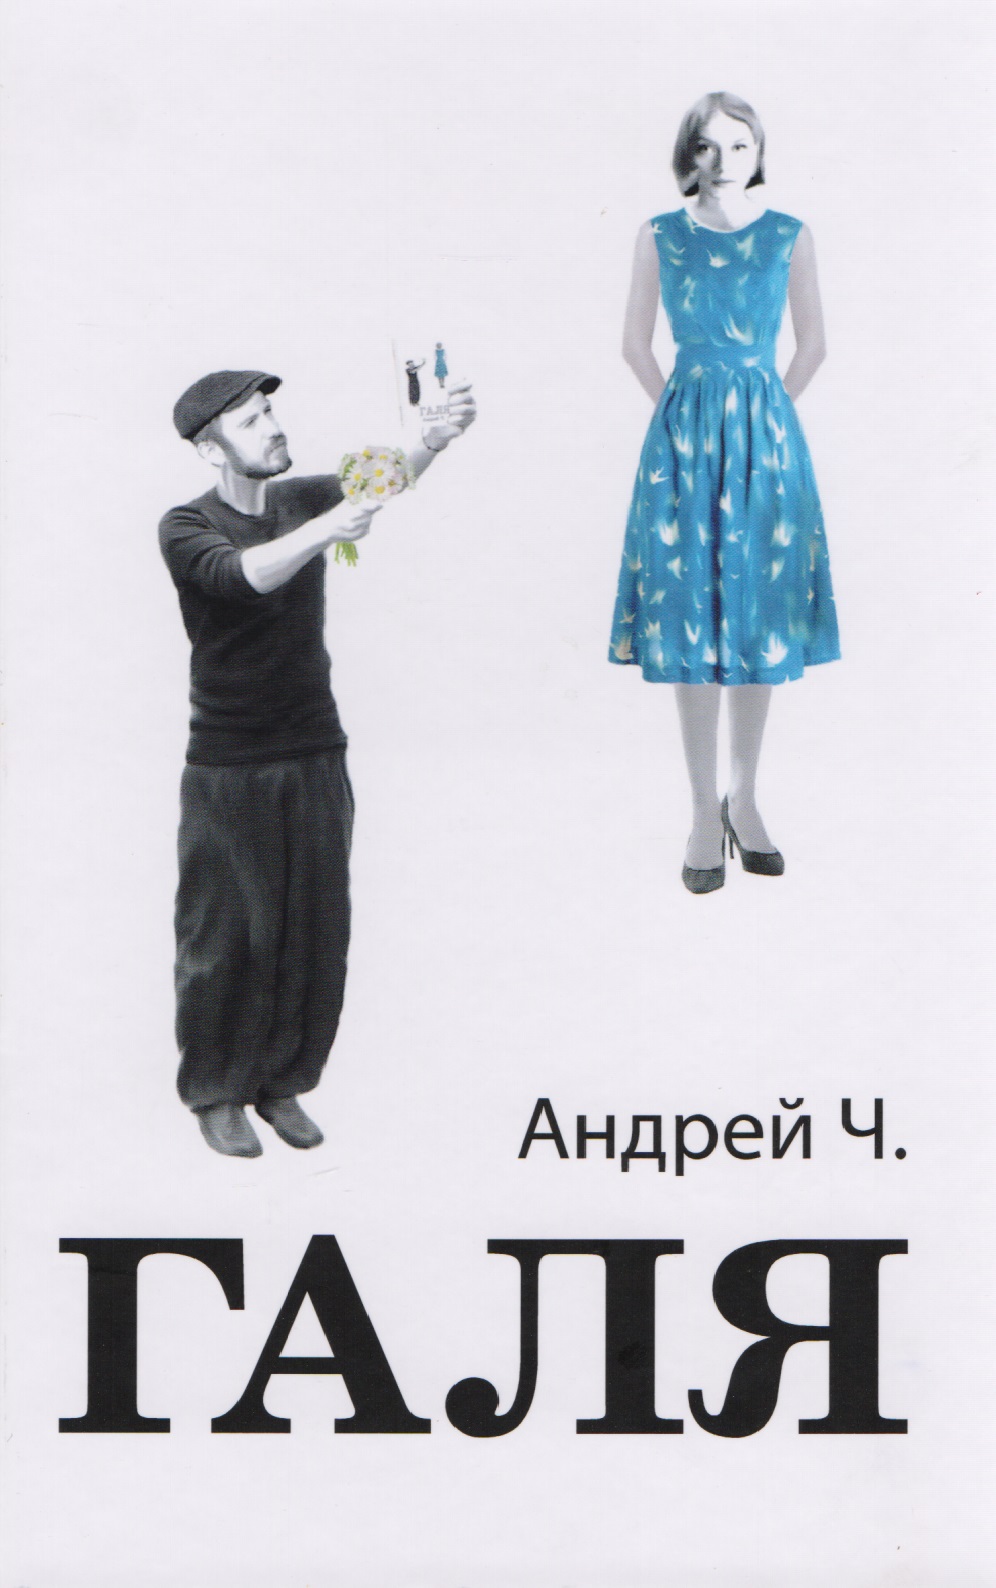 Ч. Андрей Галя (2 изд) Андрей Ч.